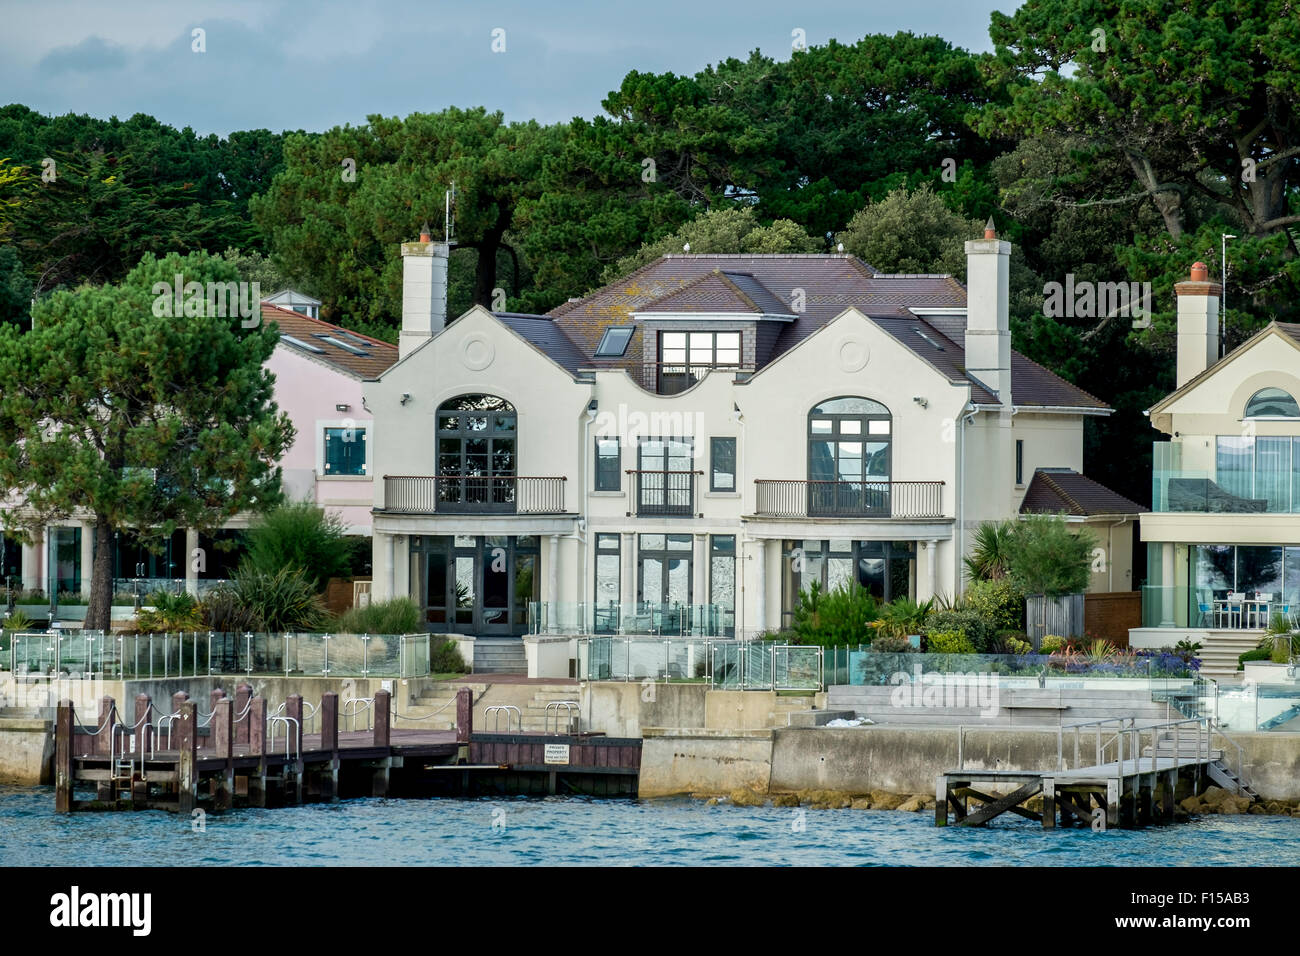 Maisons de luxe des riches et célèbres sur la célèbre plage de Sandbanks Dorset UK savoir localement comme ligne de milliardaire. Banque D'Images